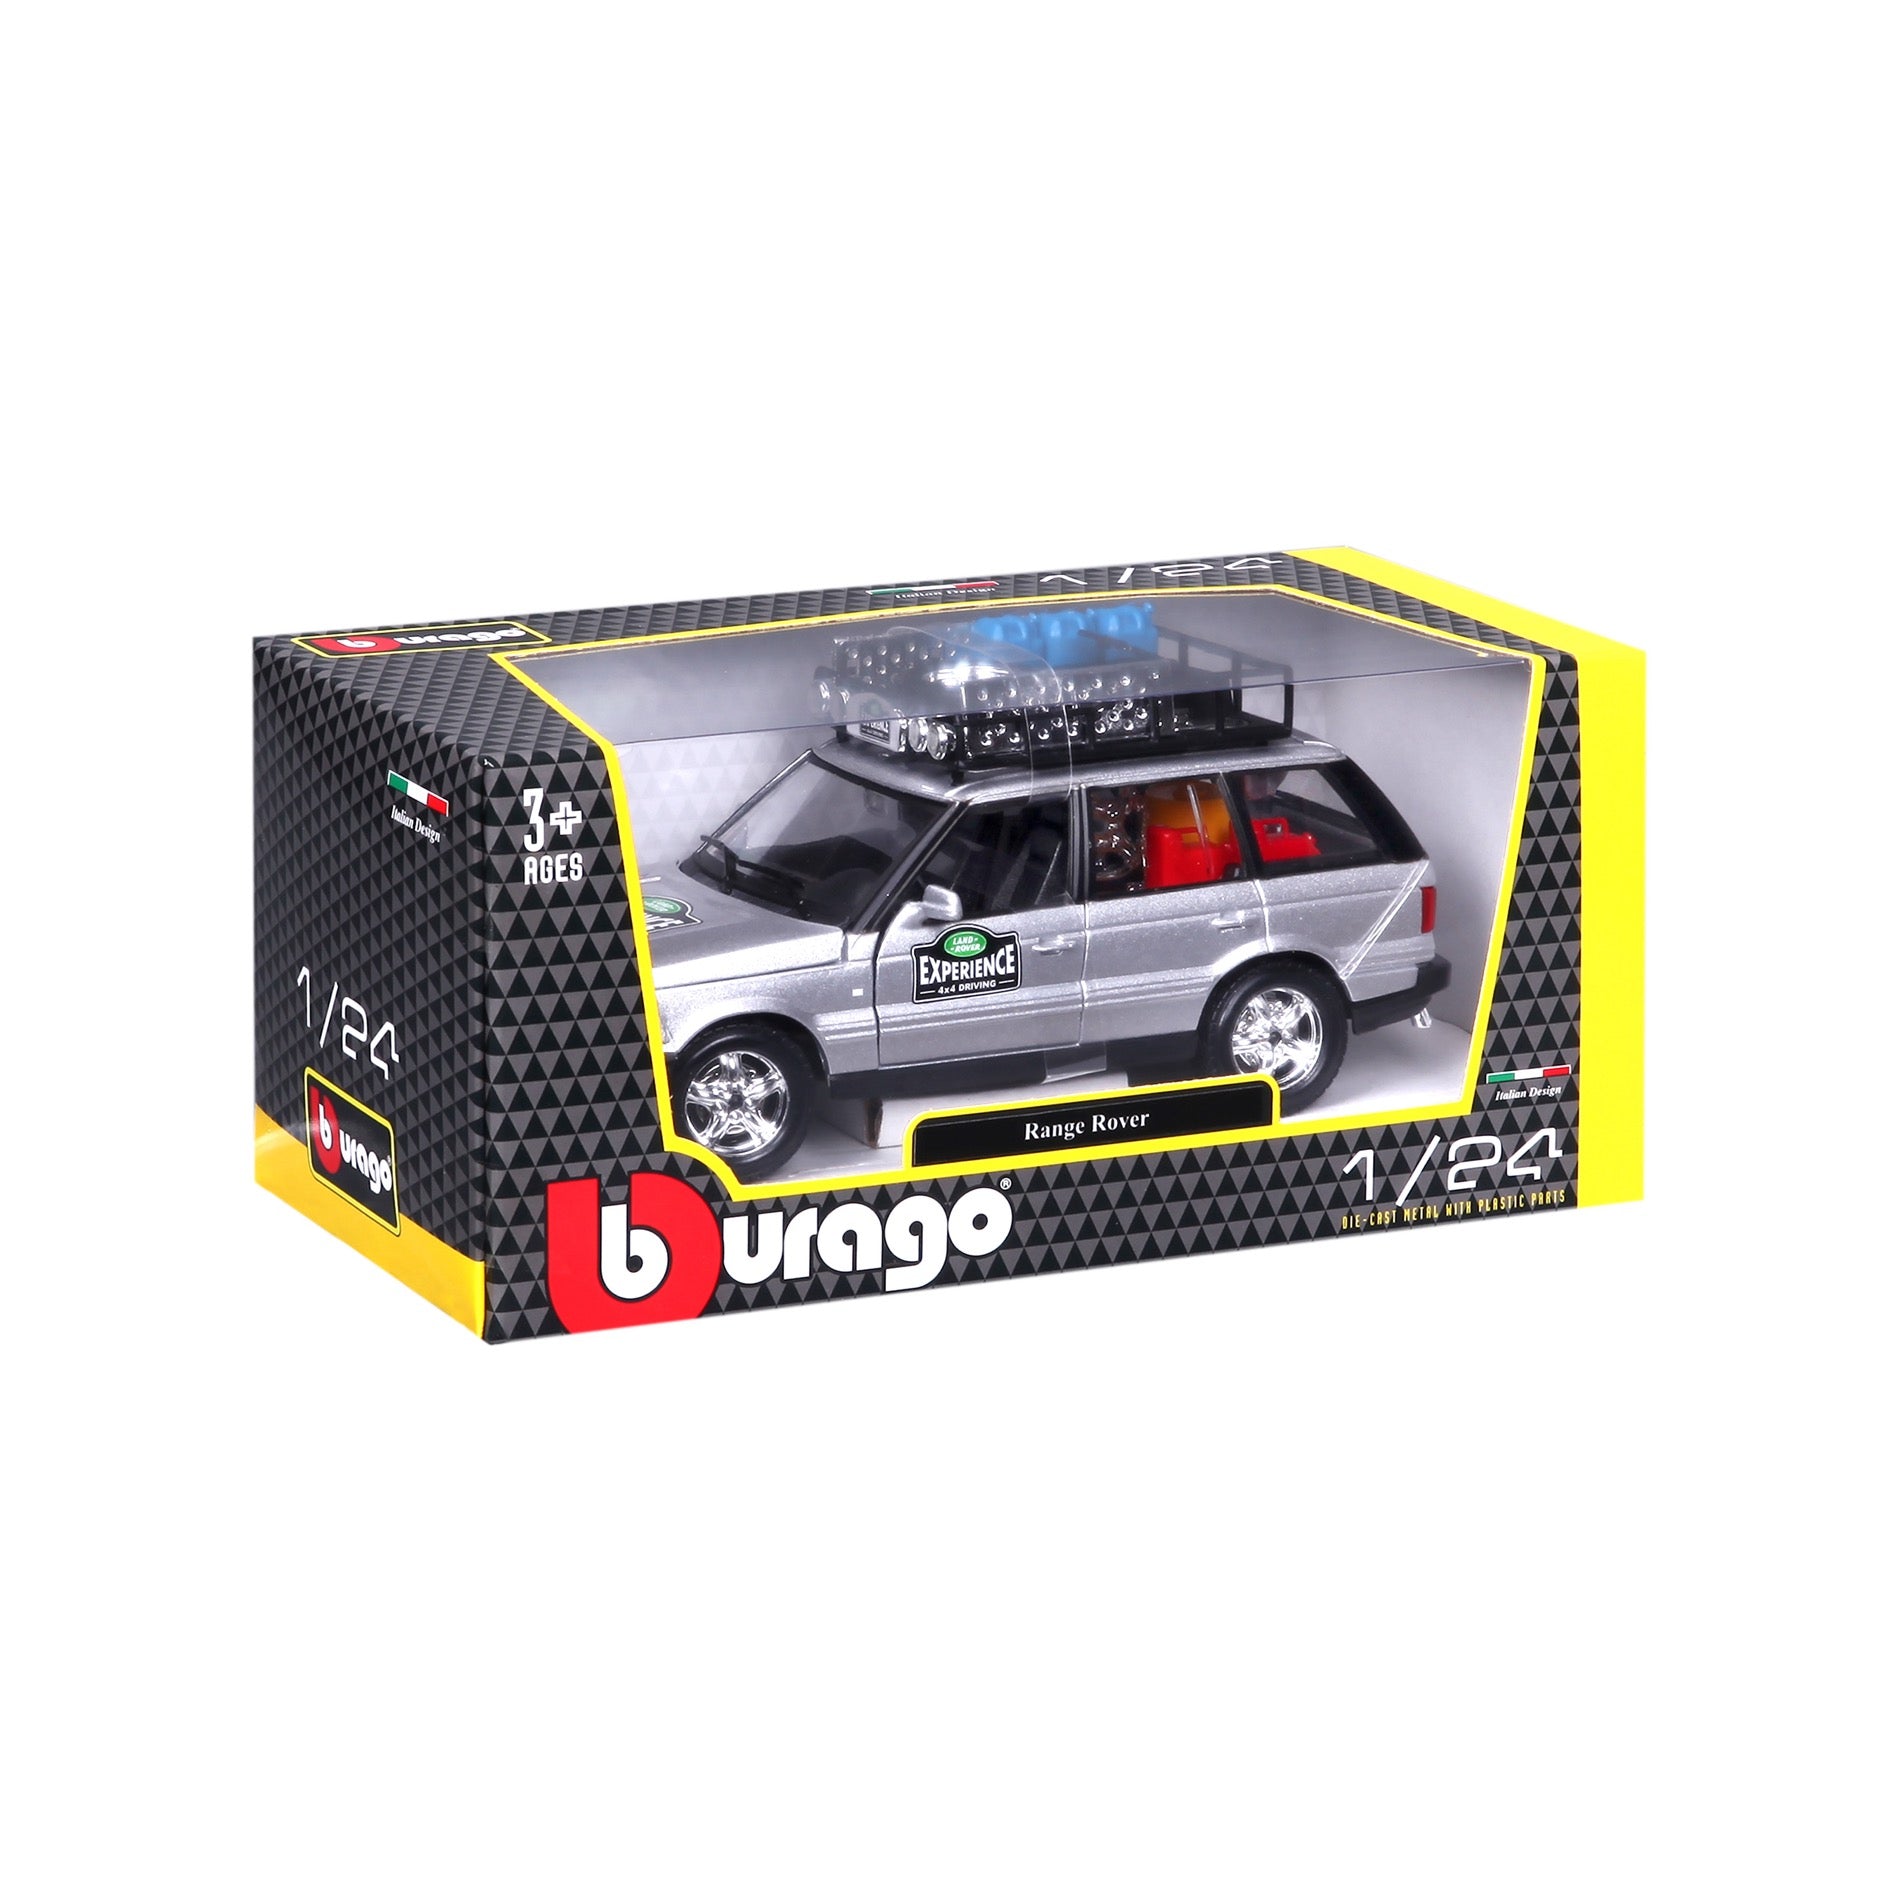 18-22061 Bburago - Range Rover Experience 4x4 - silver - 1:24